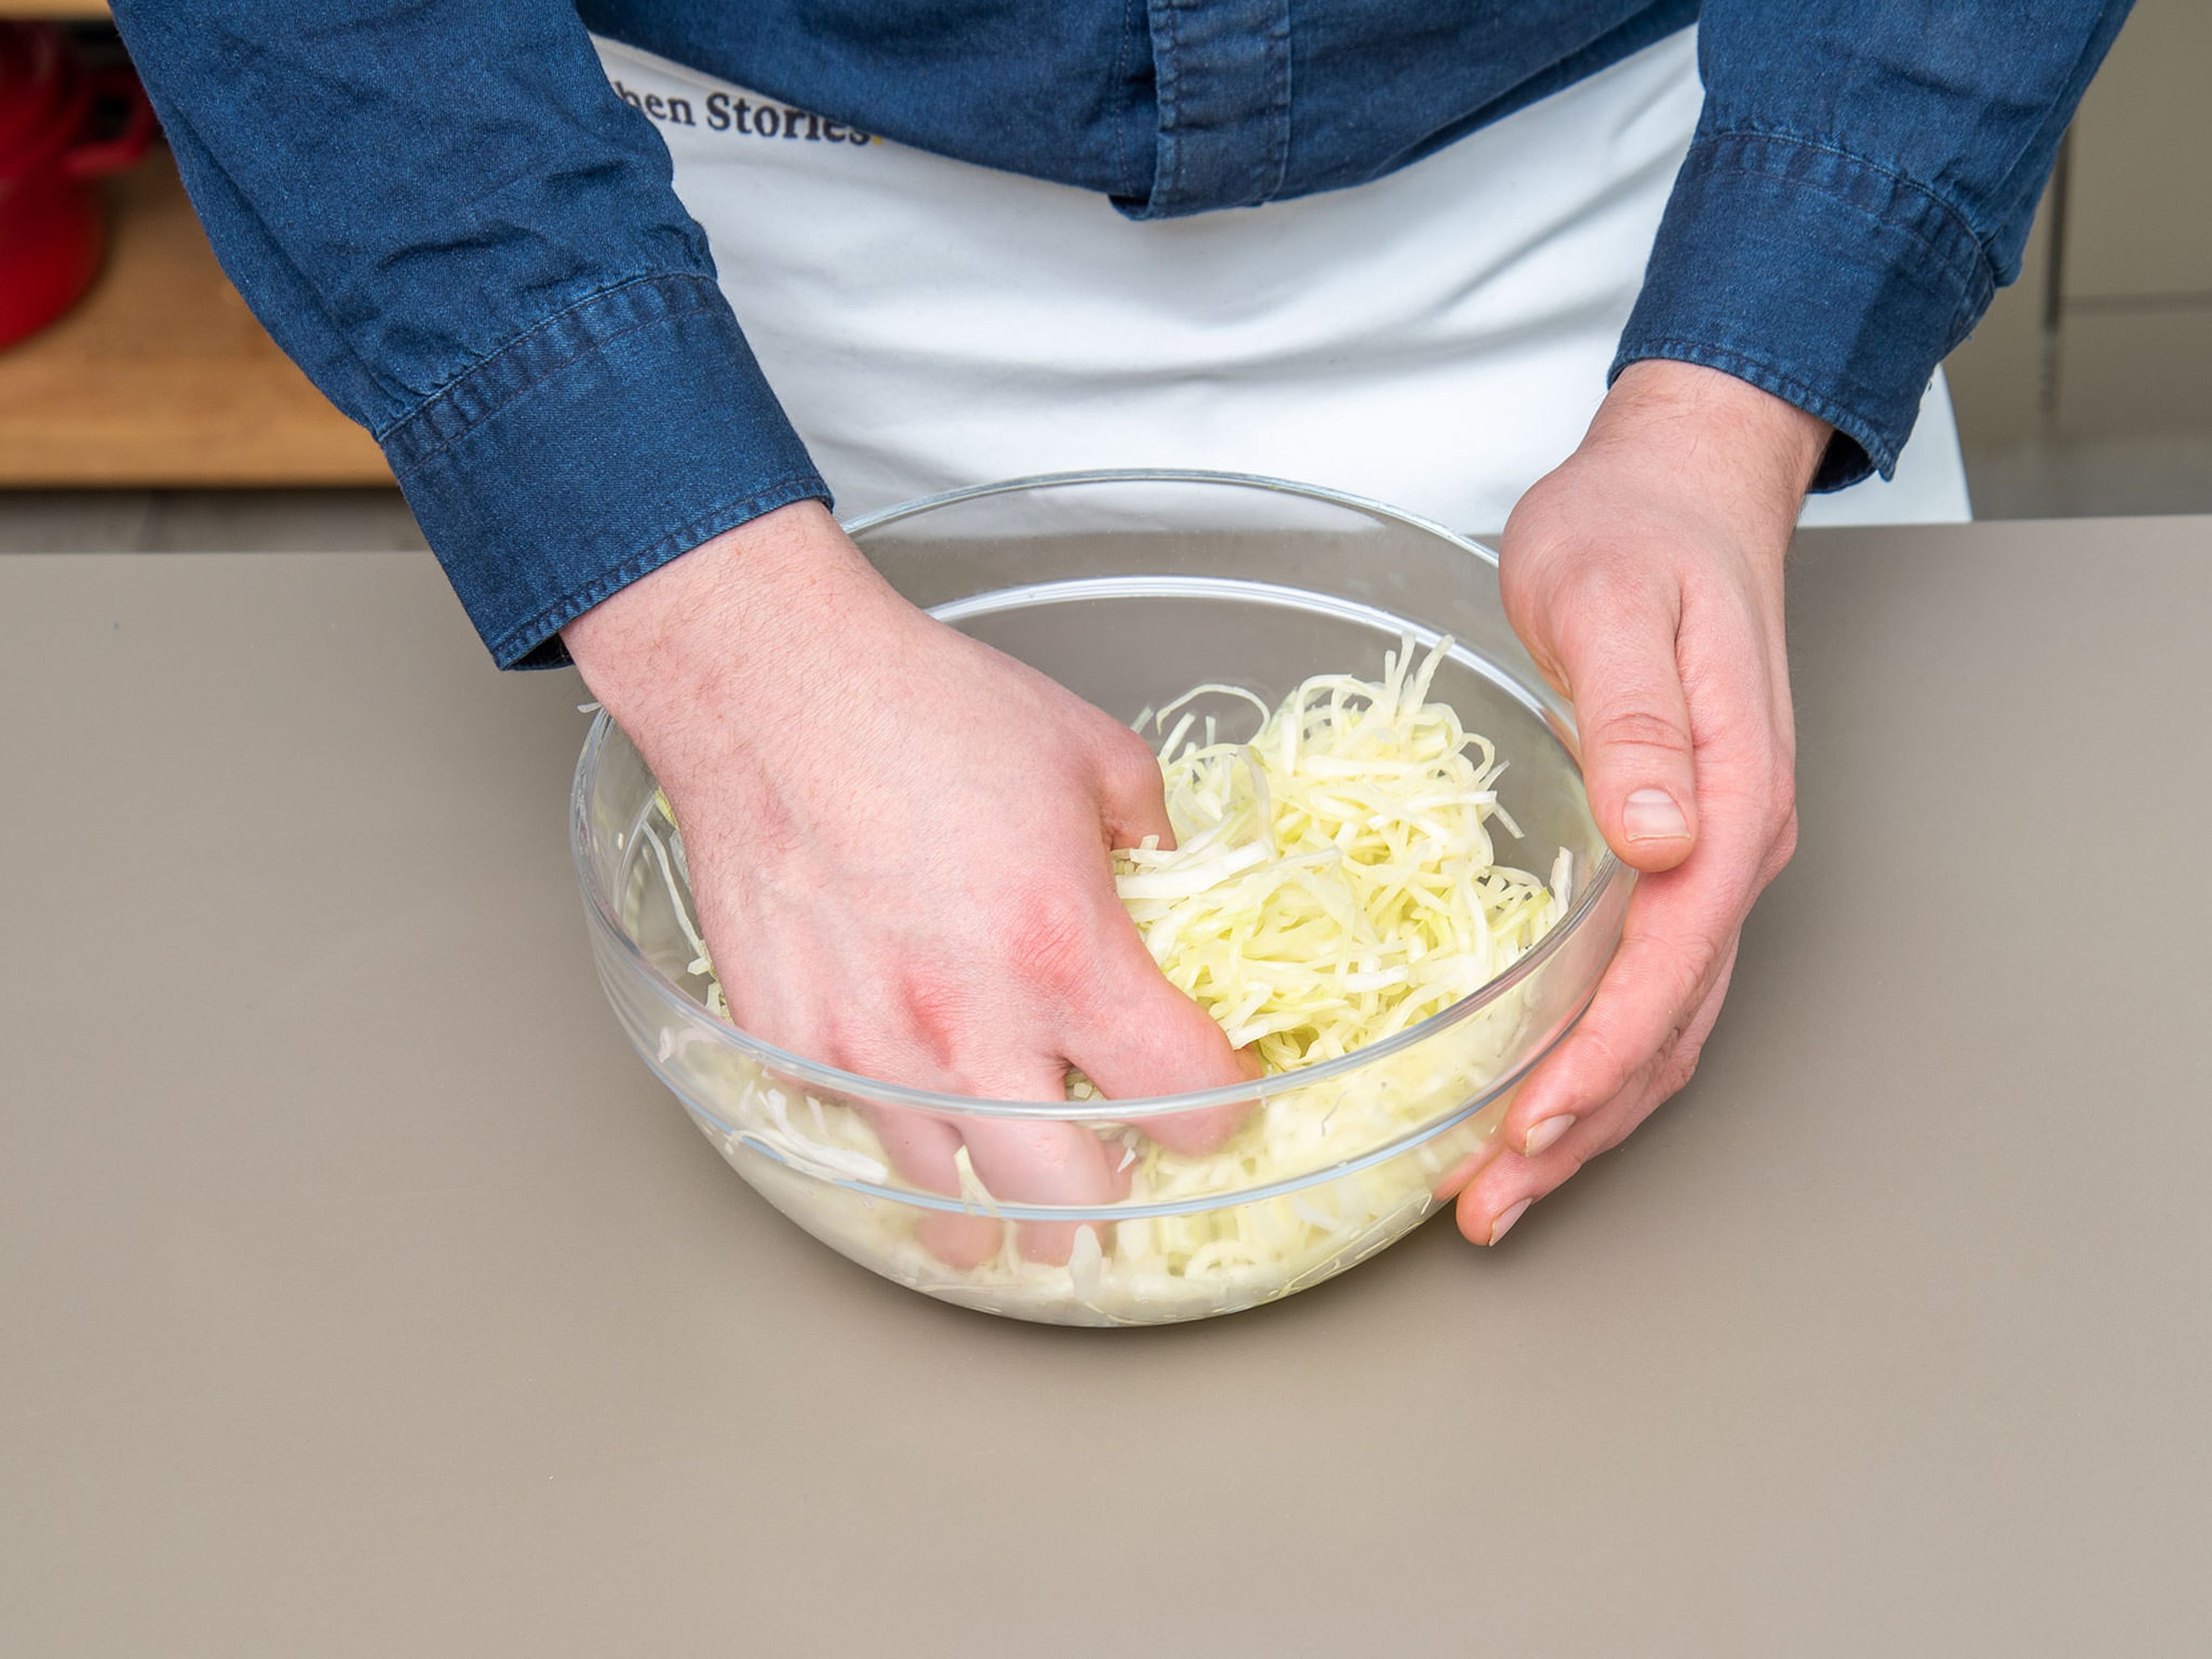 Den Weißkohl mit Salz und Zucker würzen und mit den Händen für ca. 5 - 10 Min. kneten, bis der Kohl weich wird. Mit Frischhaltefolie abdecken und über Nacht im Kühlschrank ruhen lassen, idealerweise für ca. 24 Std.